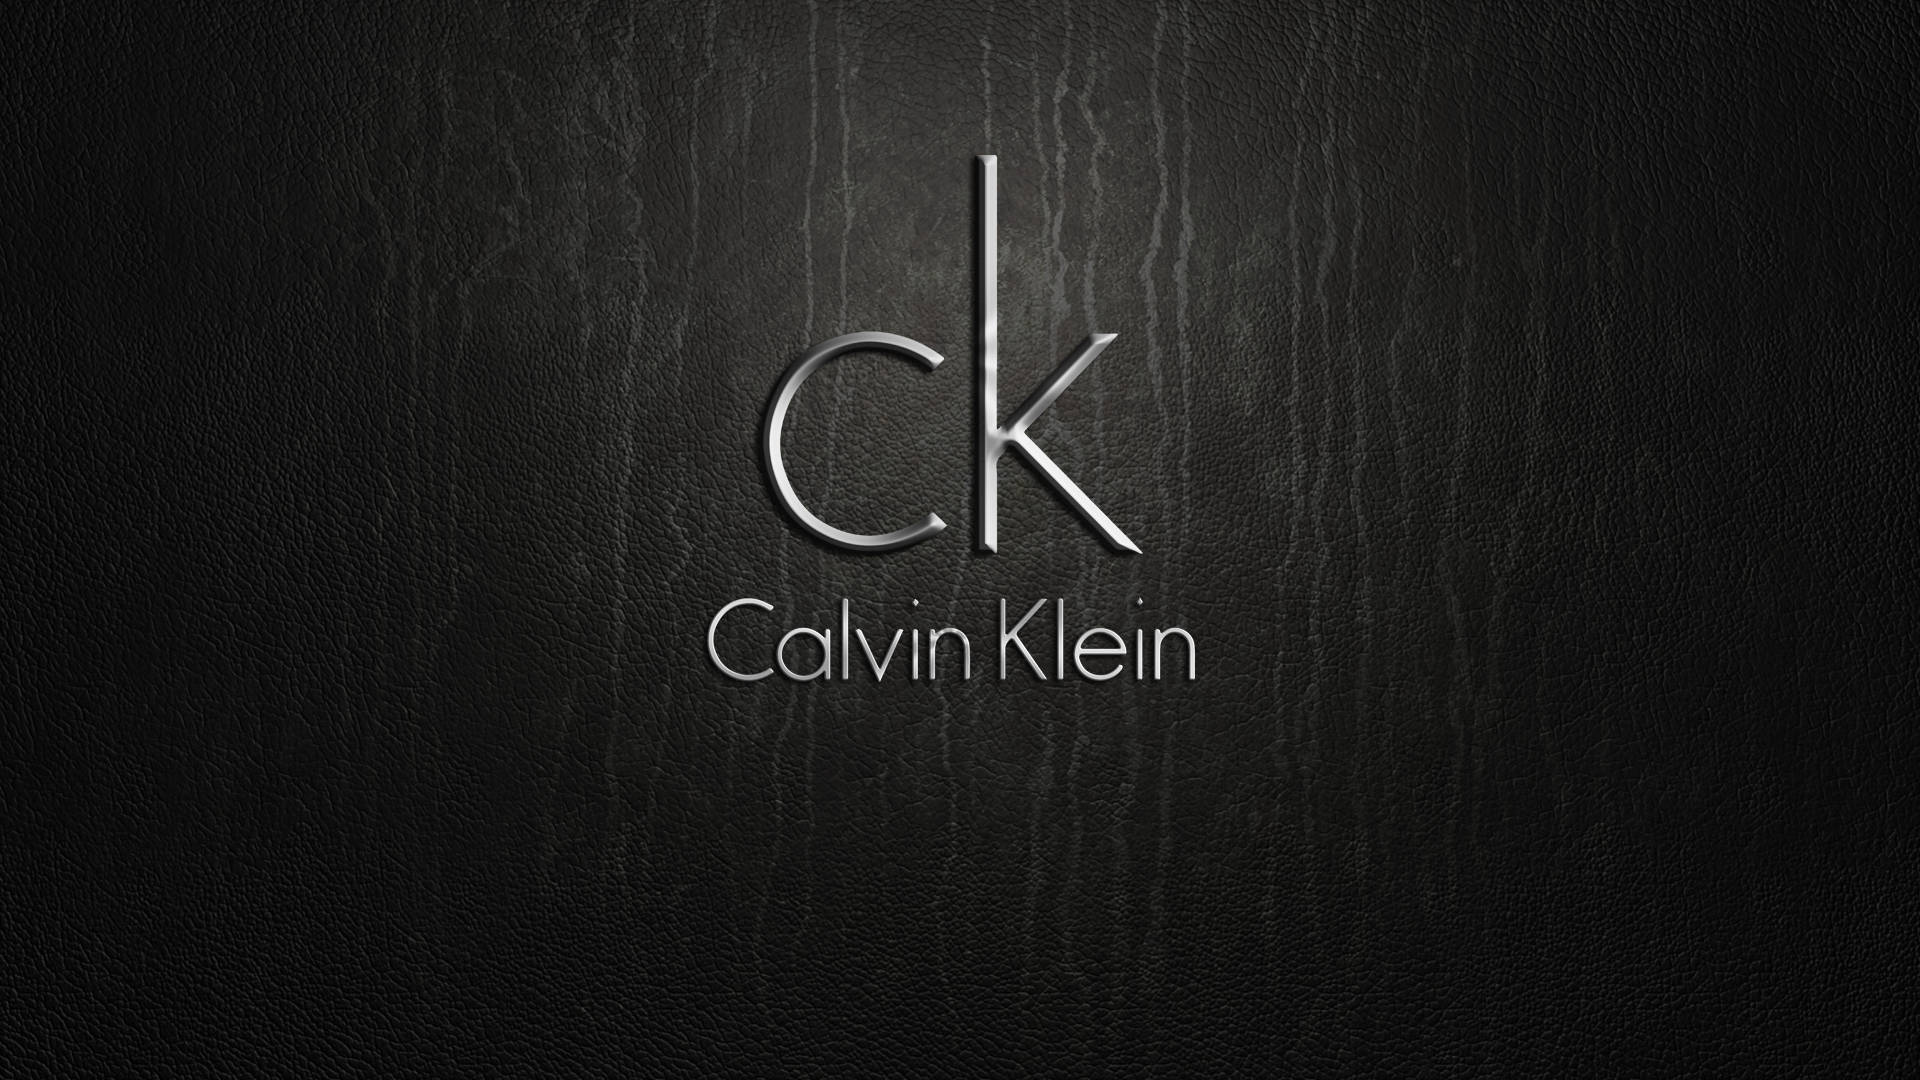 Calvin Klein Brand Background